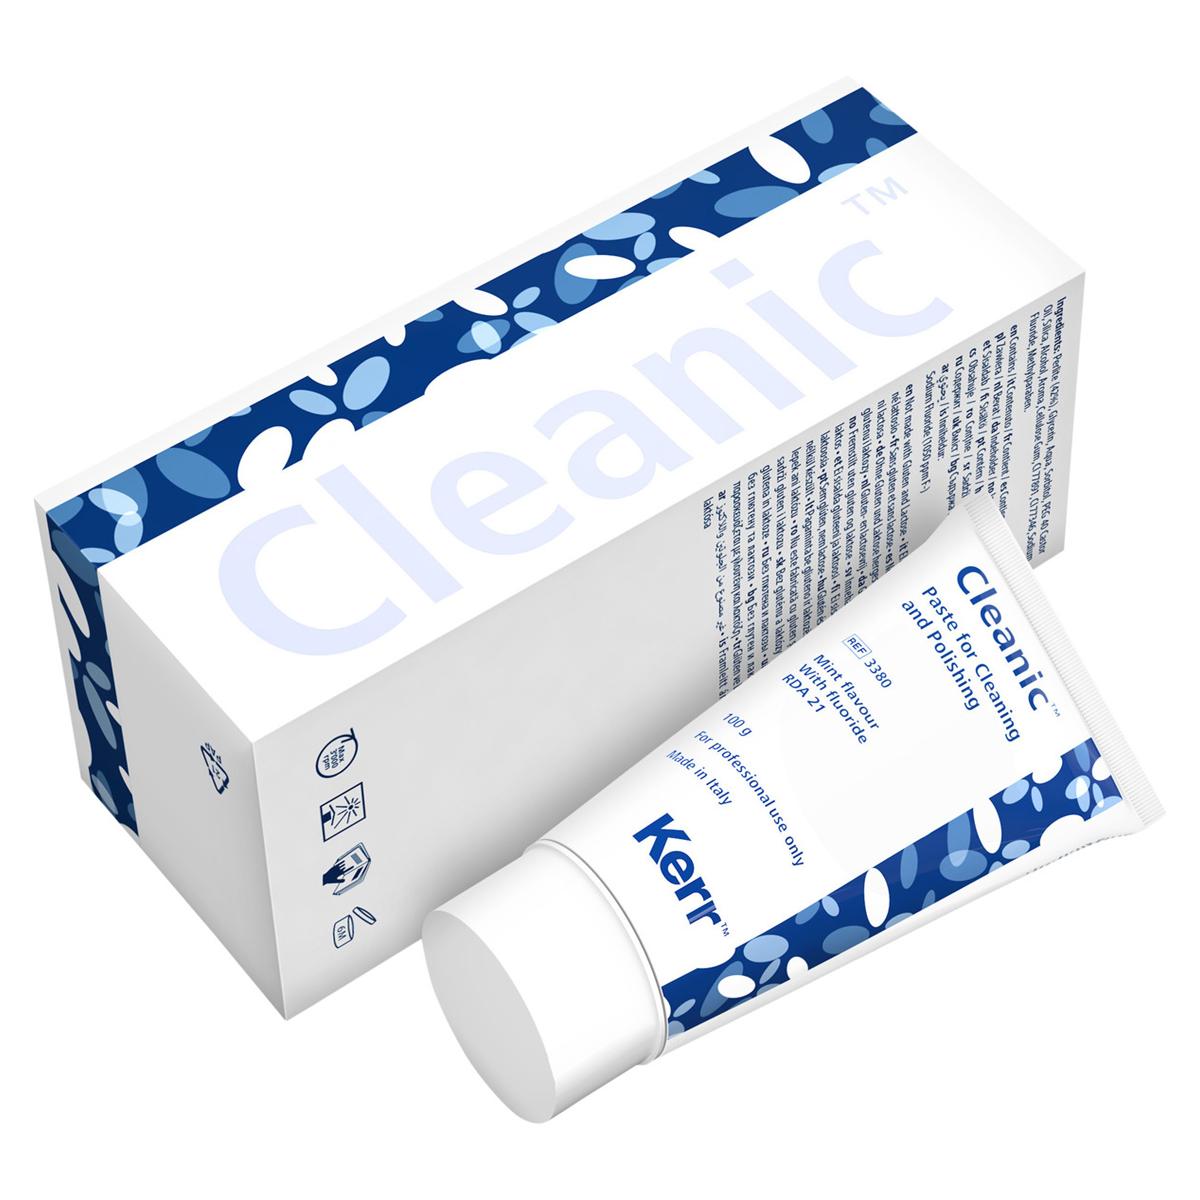 Cleanic met fluoride - Mint, Tube 100 gram (REF. 3380)